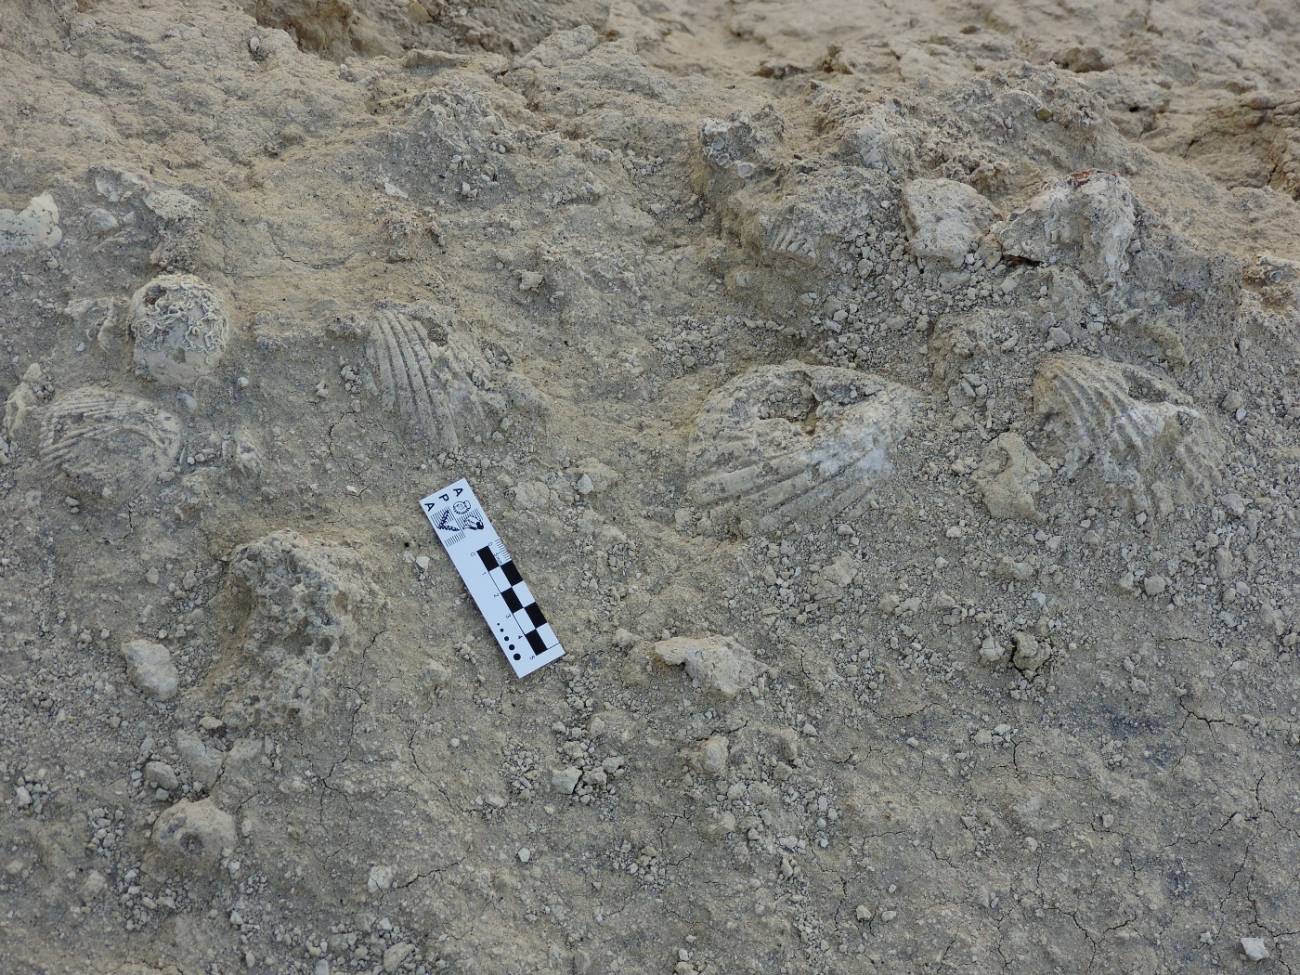 Hace 20 millones de años, la costa este de la provincia argentina de Chubut estaba bajo el agua. Los restos de muchos de los organismos que vivieron en aquel mar hoy se pueden encontrar a simple vista en los afloramientos de la Formación Gaiman.